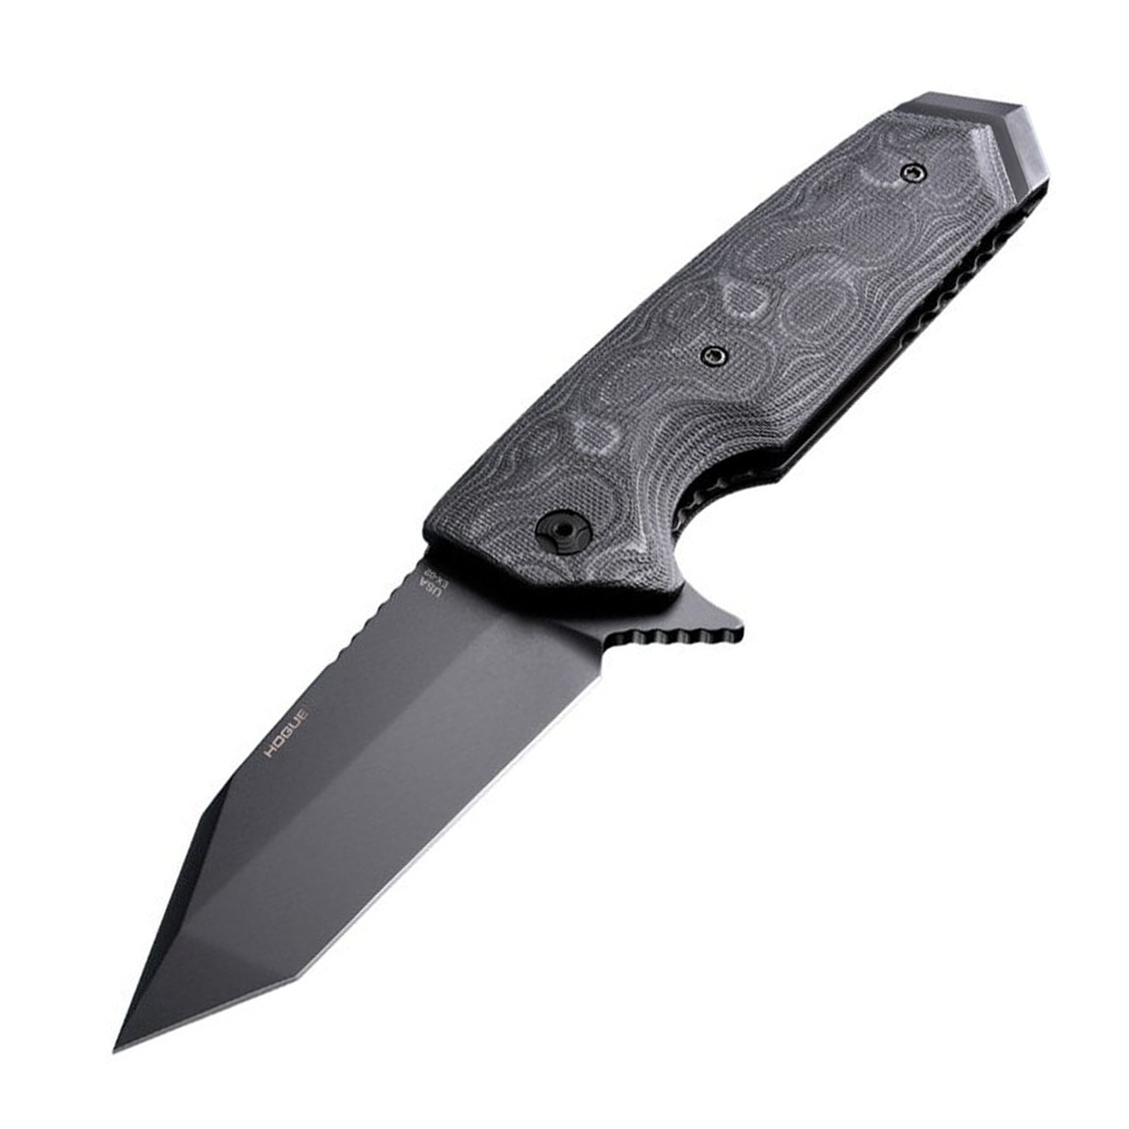 Нож складной туристический Hogue EX-02 Tanto, сталь 154CM, рукоять стеклотекстолит G-Mascus®, чёрный складной нож автоматический hogue ex 04 wharncliffe сталь 154cm рукоять стеклотекстолит g mascus®